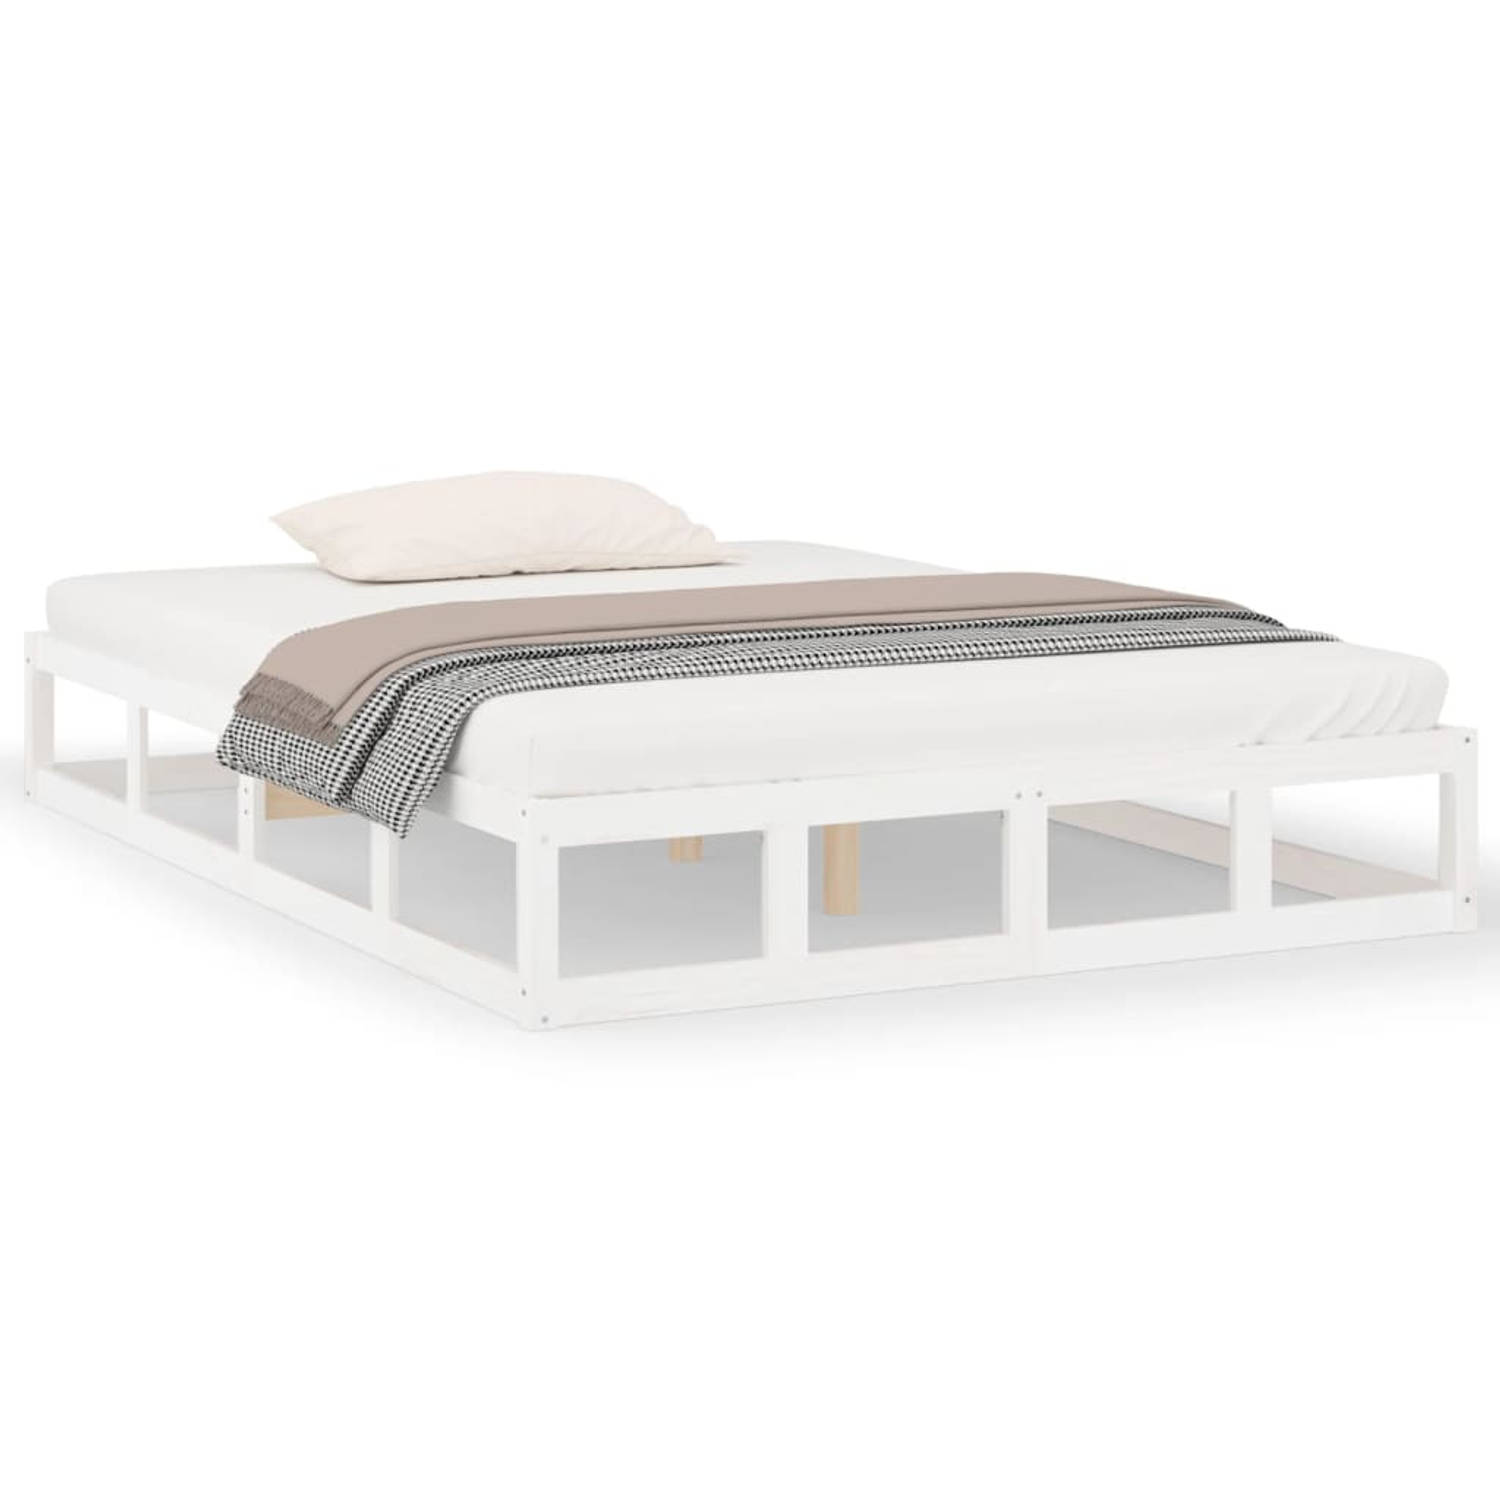 The Living Store Bedframe massief hout wit 200x200 cm - Bedframe - Bedframes - Bed - Bedbodem - Ledikant - Bed Frame - Massief Houten Bedframe - Slaapmeubel - Tweepersoonsbed - Bed